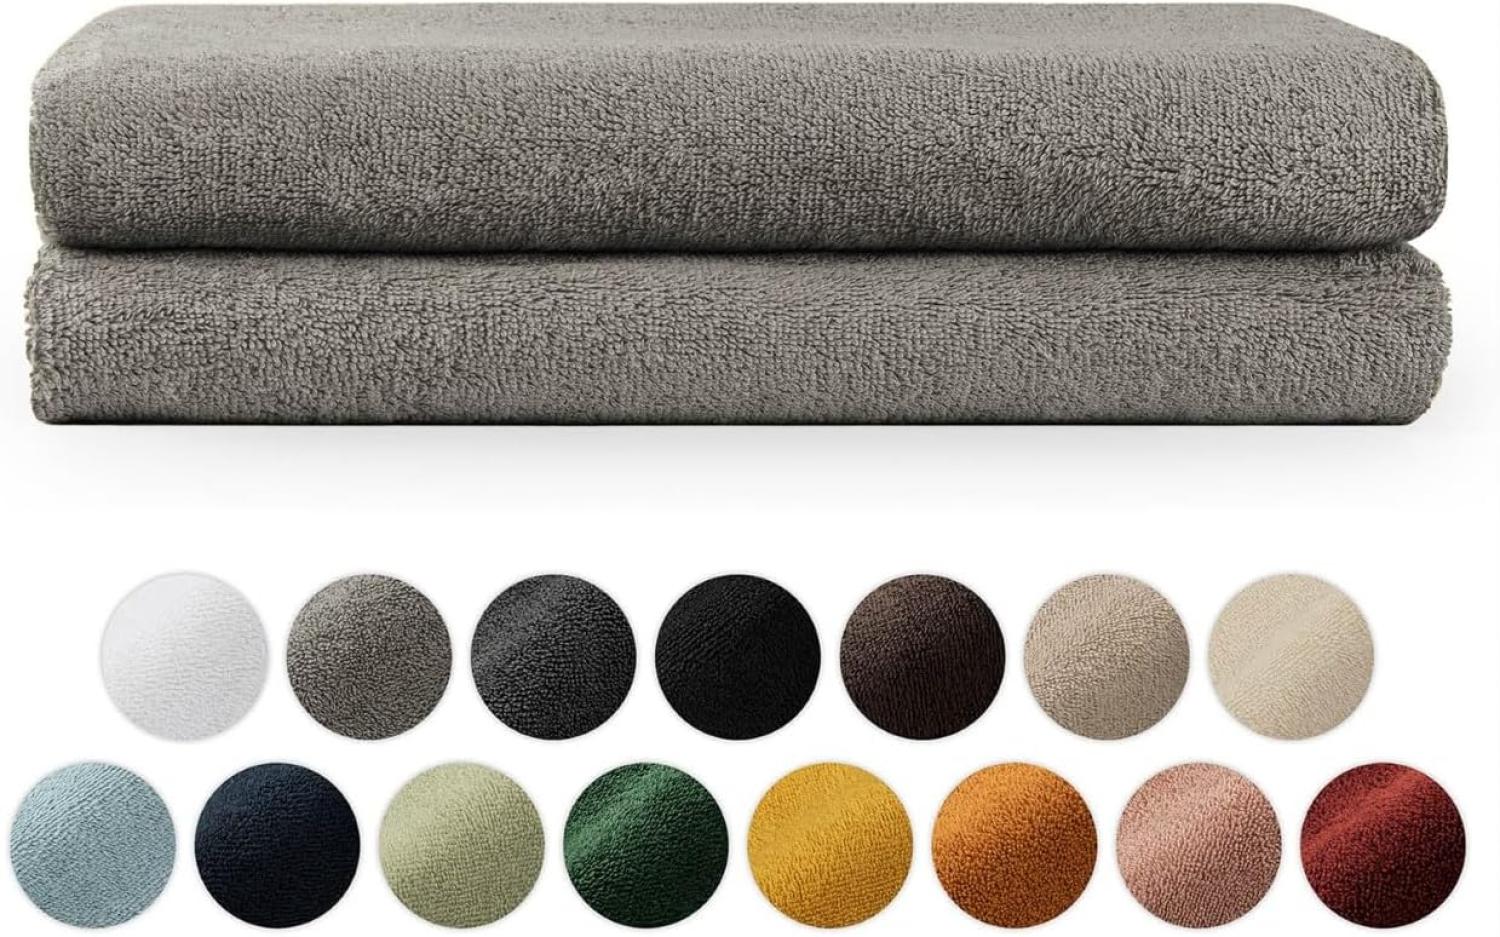 Blumtal Premium Frottier Handtücher Set mit Aufhängschlaufen - Baumwolle Oeko-TEX Zertifiziert, weich, saugstark - 2X Badetuch (70x140 cm), Grau Bild 1